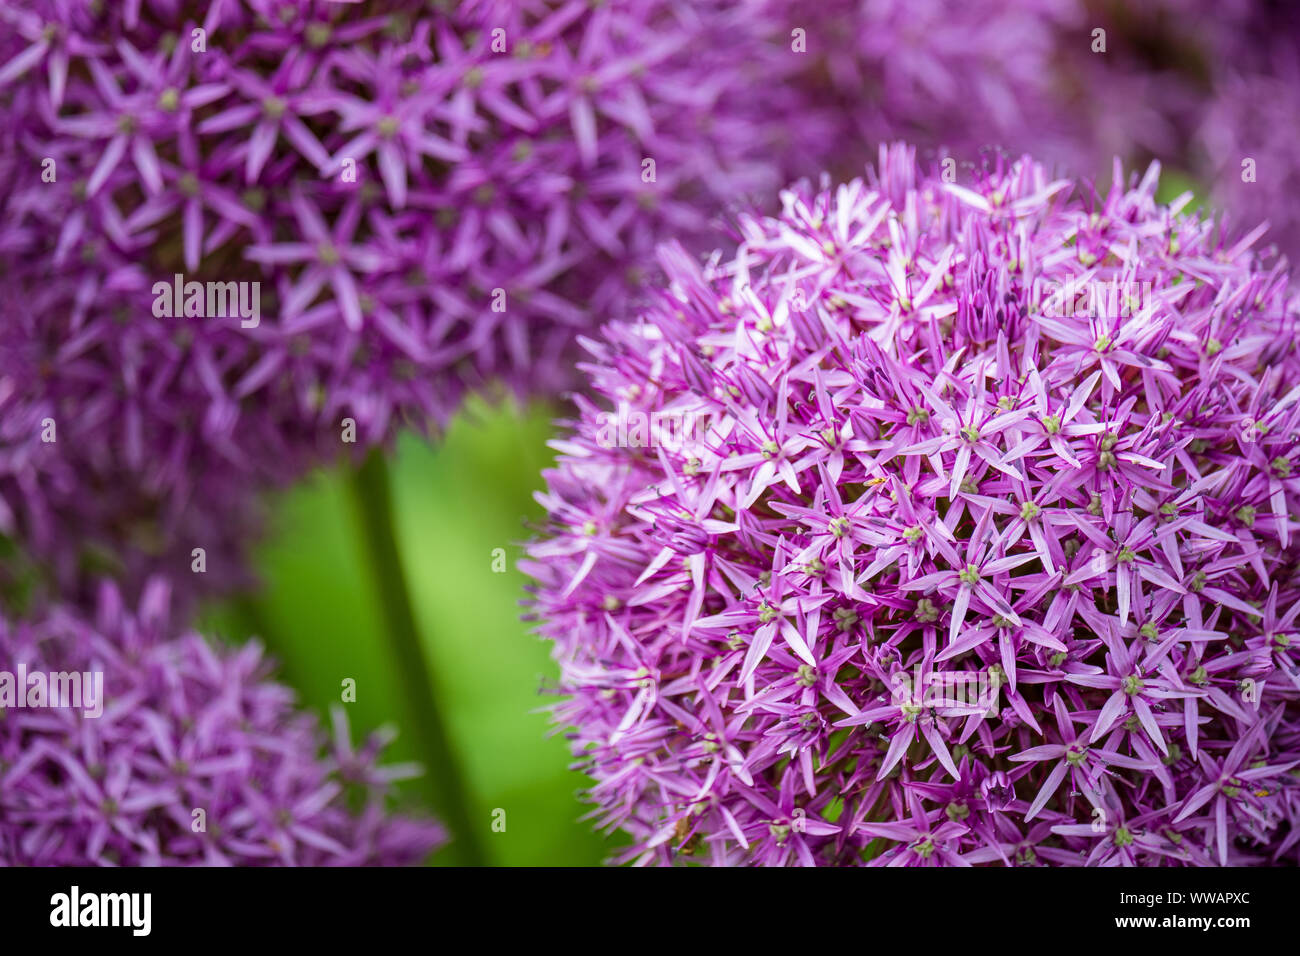 Cloesup of Flowers of blooming purple drumstick Allium in Garden Stock Photo